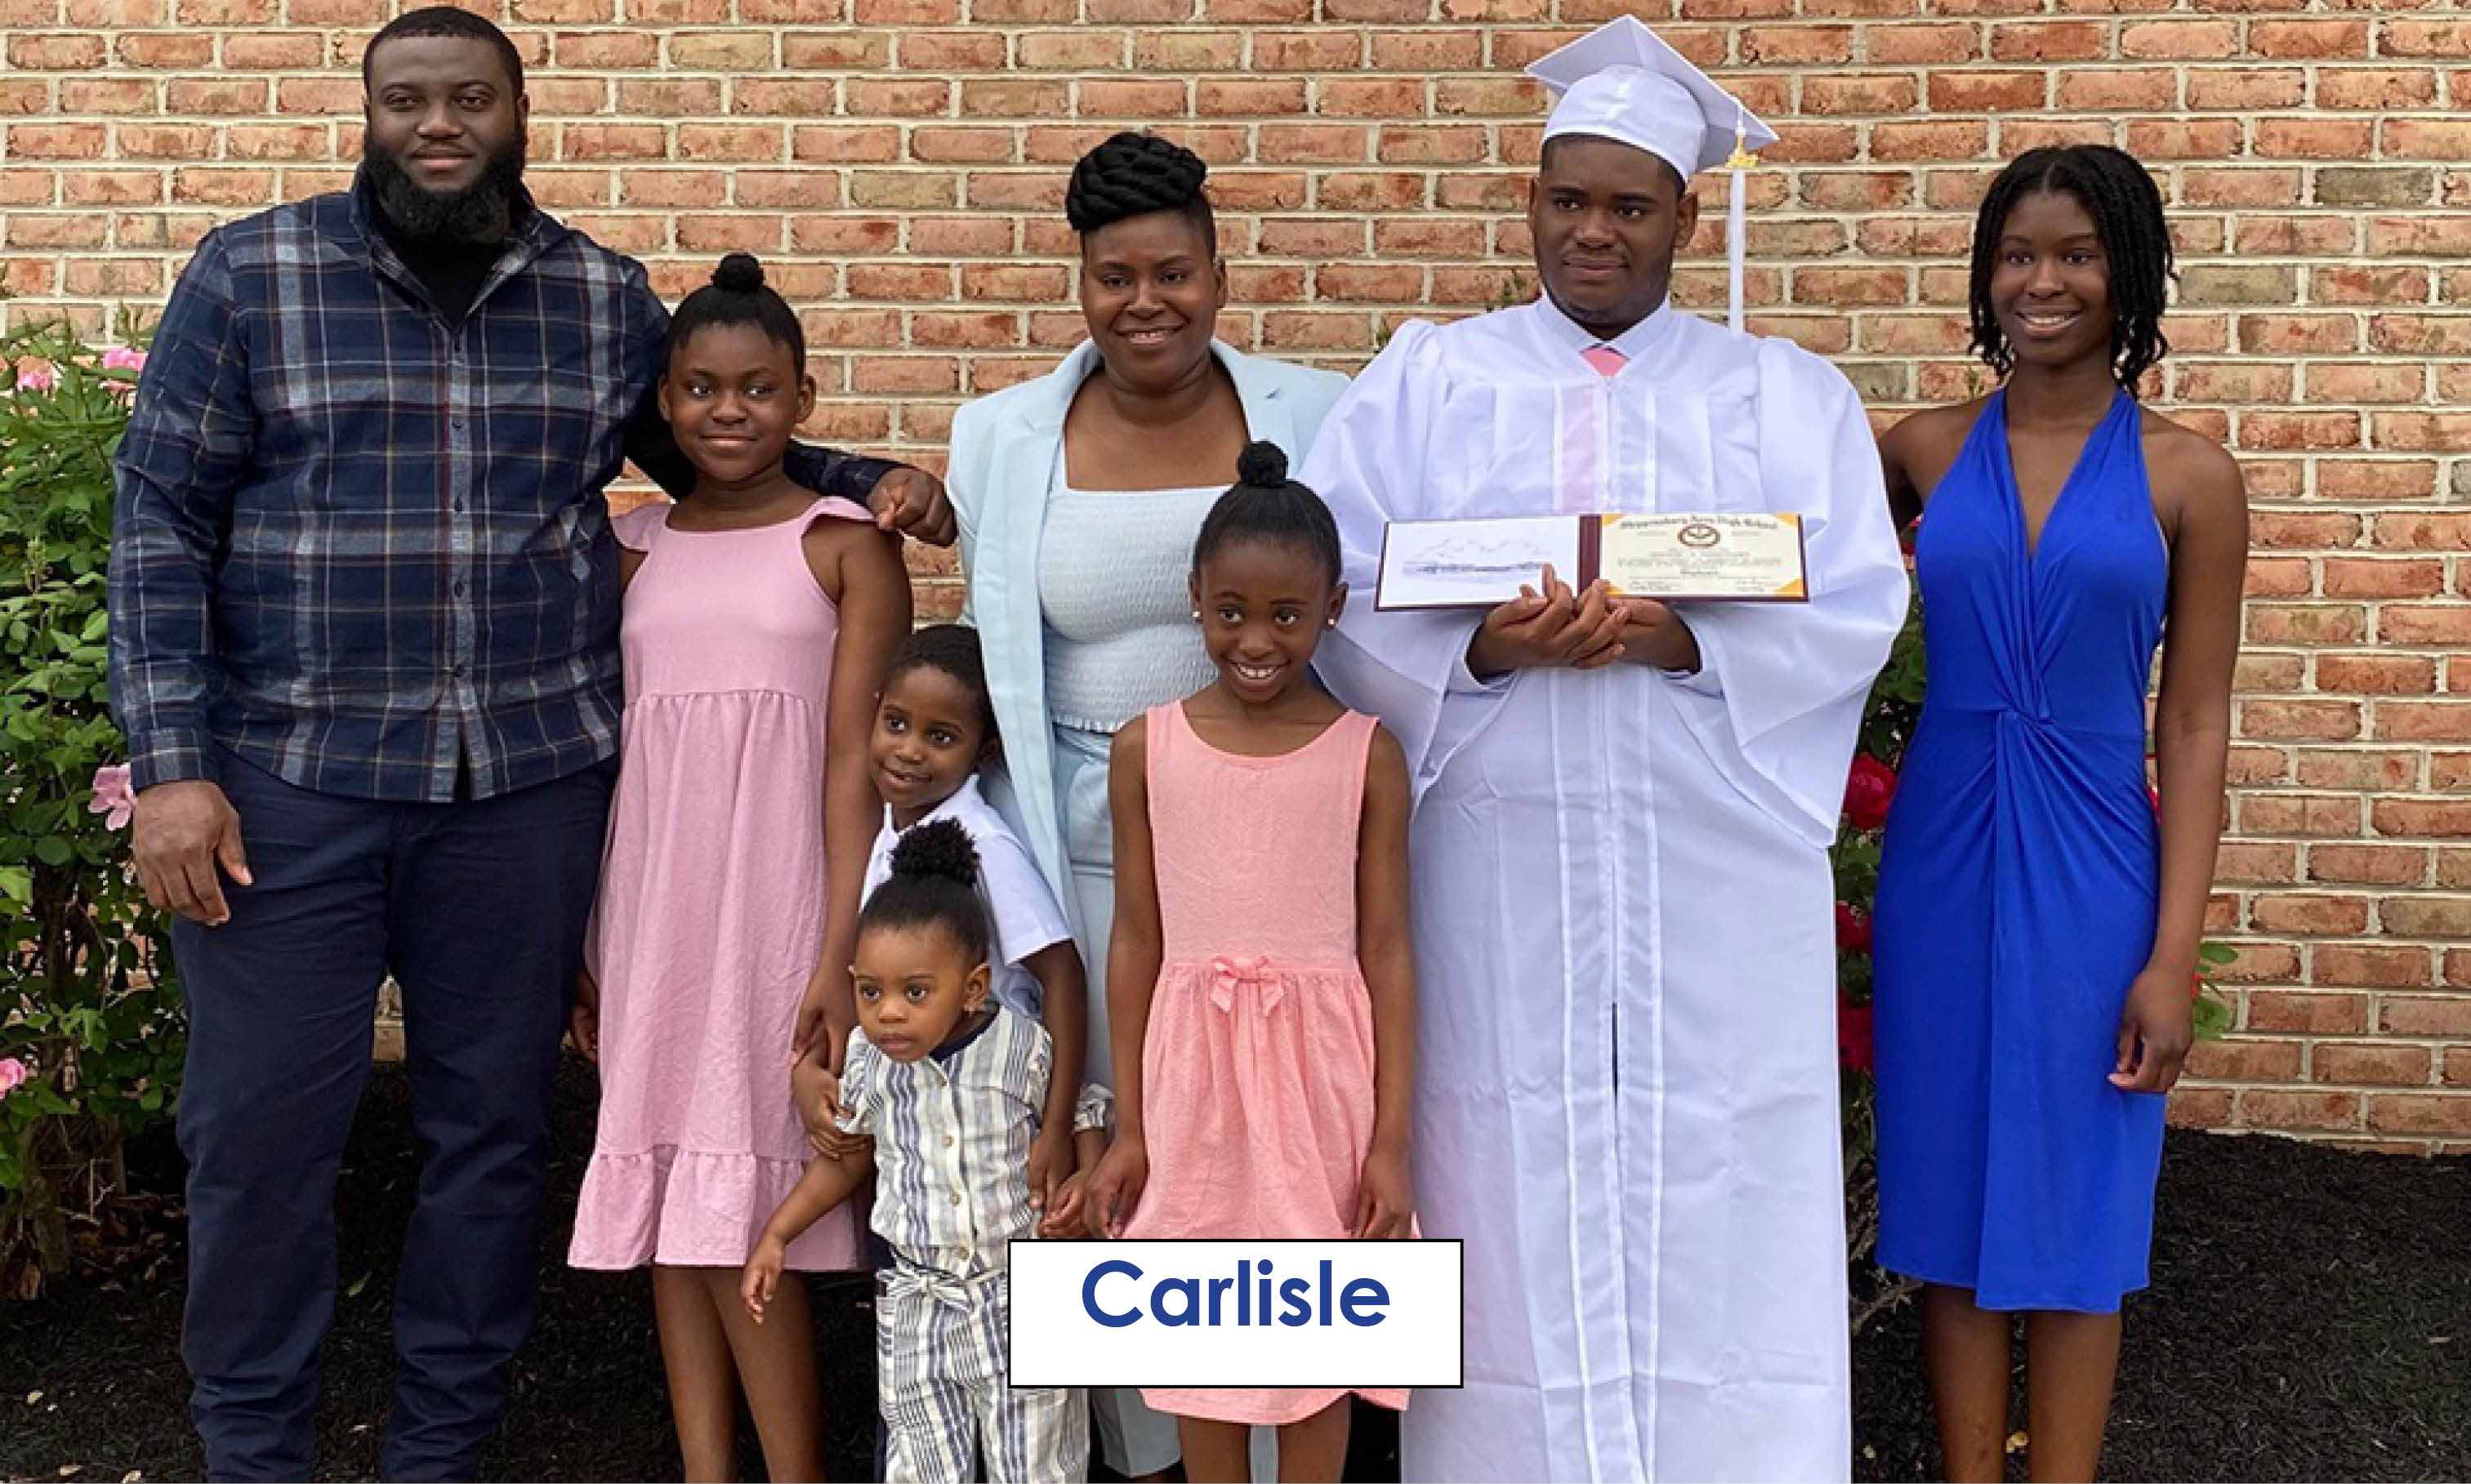 Carlisle graduation - May 27, 2022